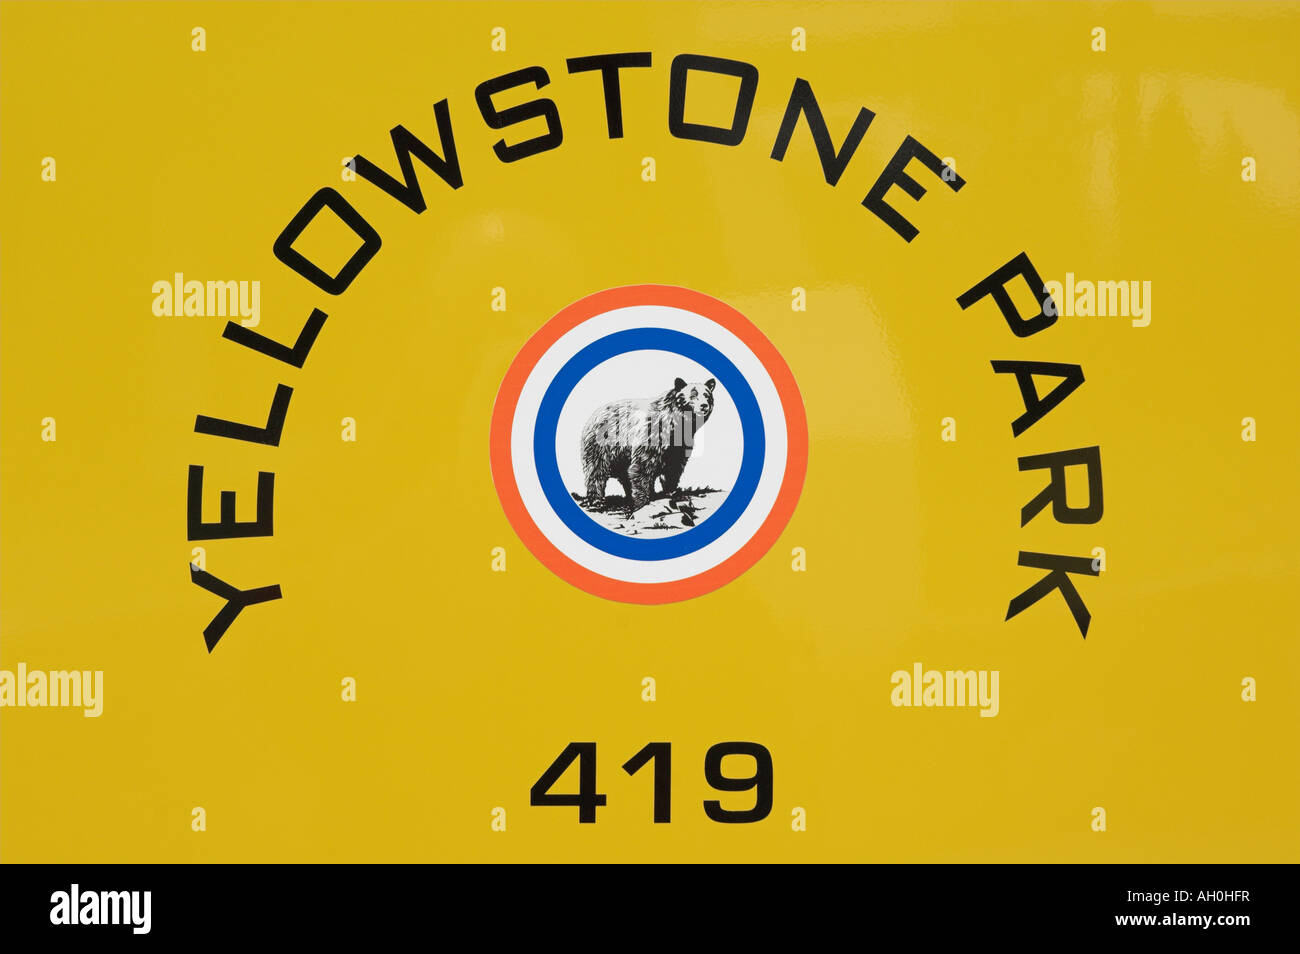 Tour bus yellowstone logo côté parc national de Yellowstone au Wyoming usa États-Unis d'Amérique Banque D'Images